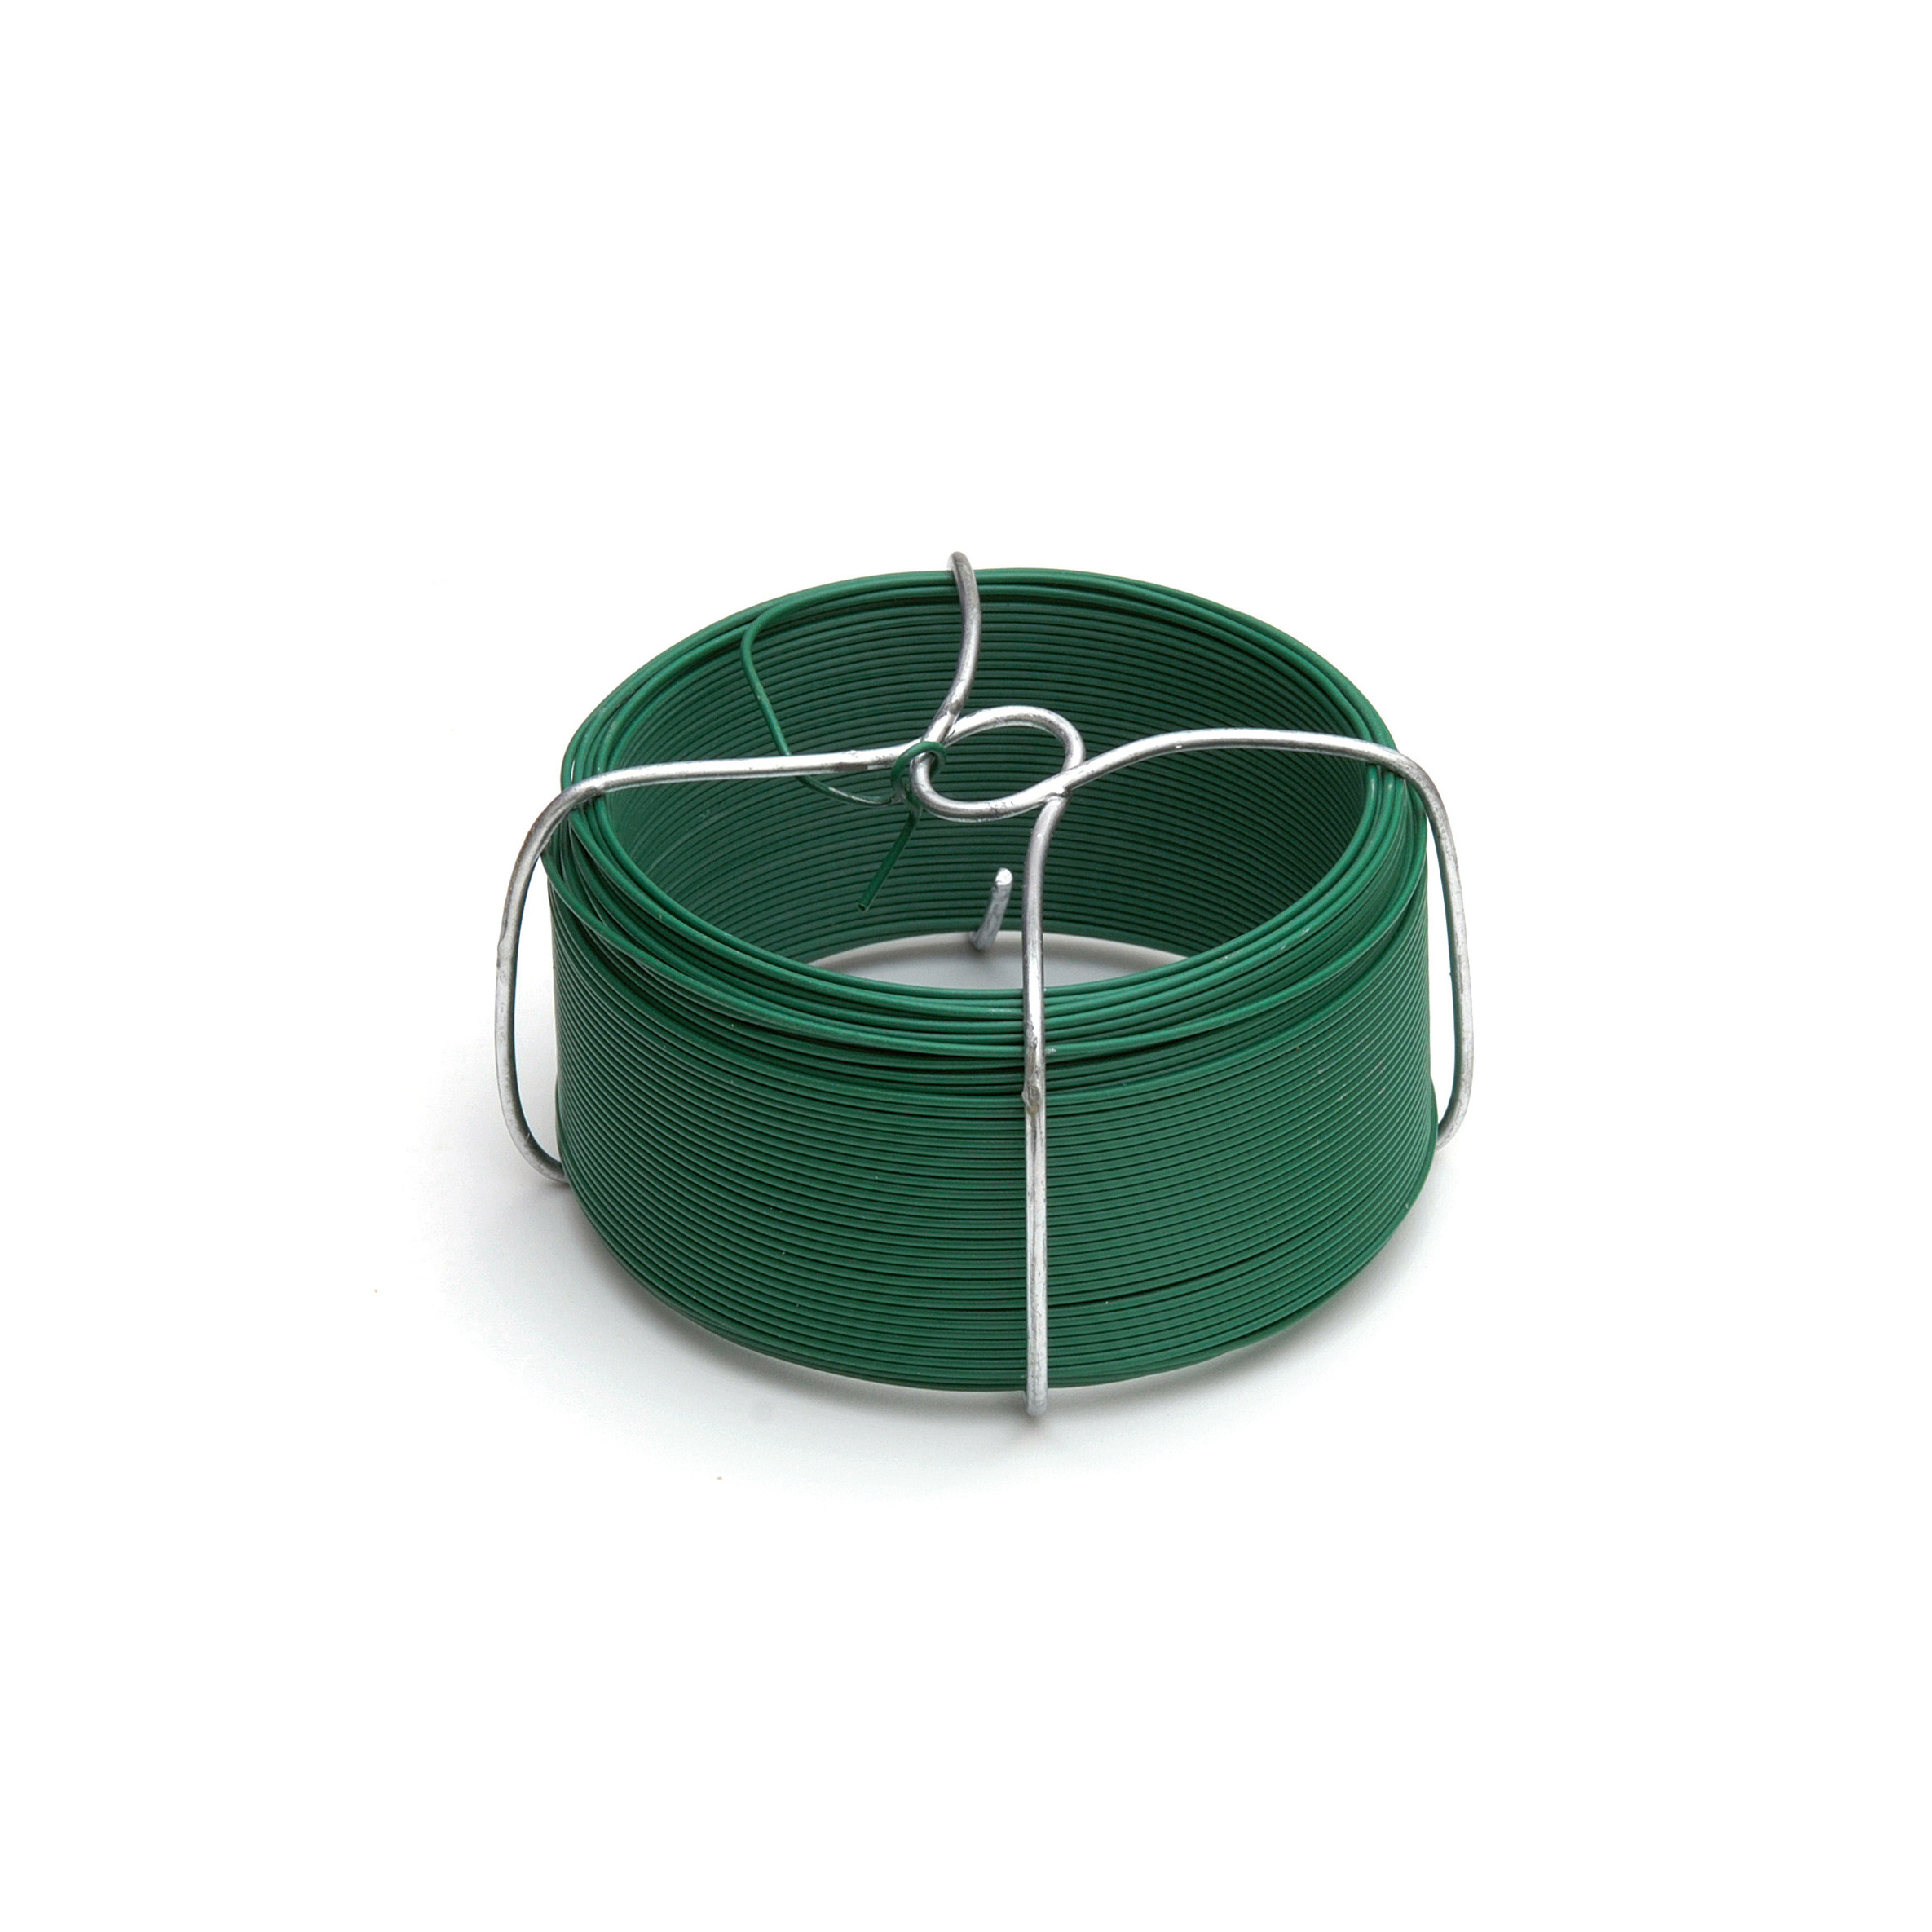 1 rol ijzerdraad-bloemendraden-binddraad groen ommanteld 1,2 mm x 50 meter op rol